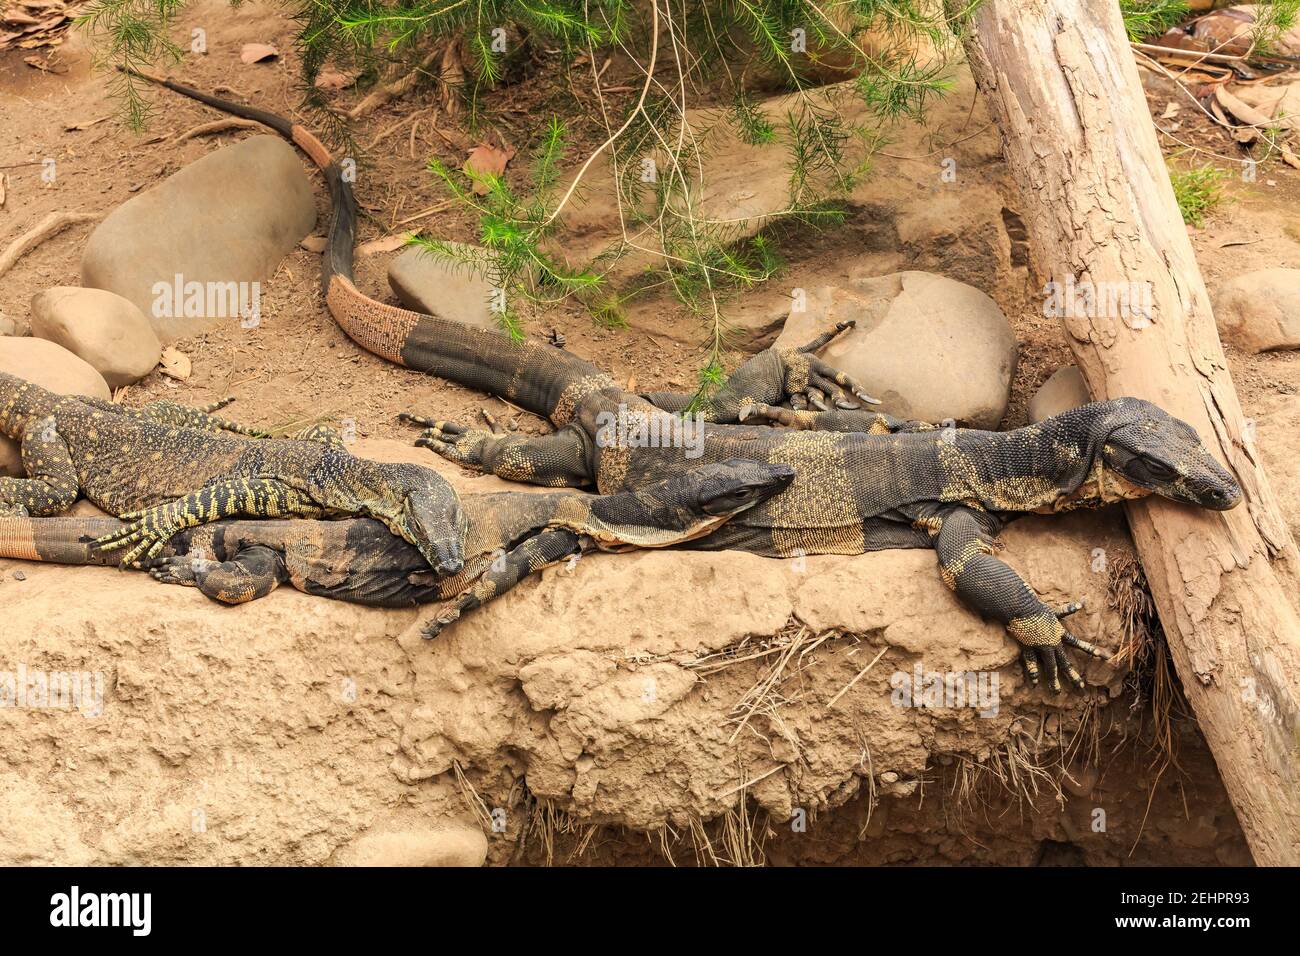 Une famille de moniteurs en dentelle, ou goannas d'arbres, grands reptiles d'Australie, se reposant ensemble sur une rive Banque D'Images